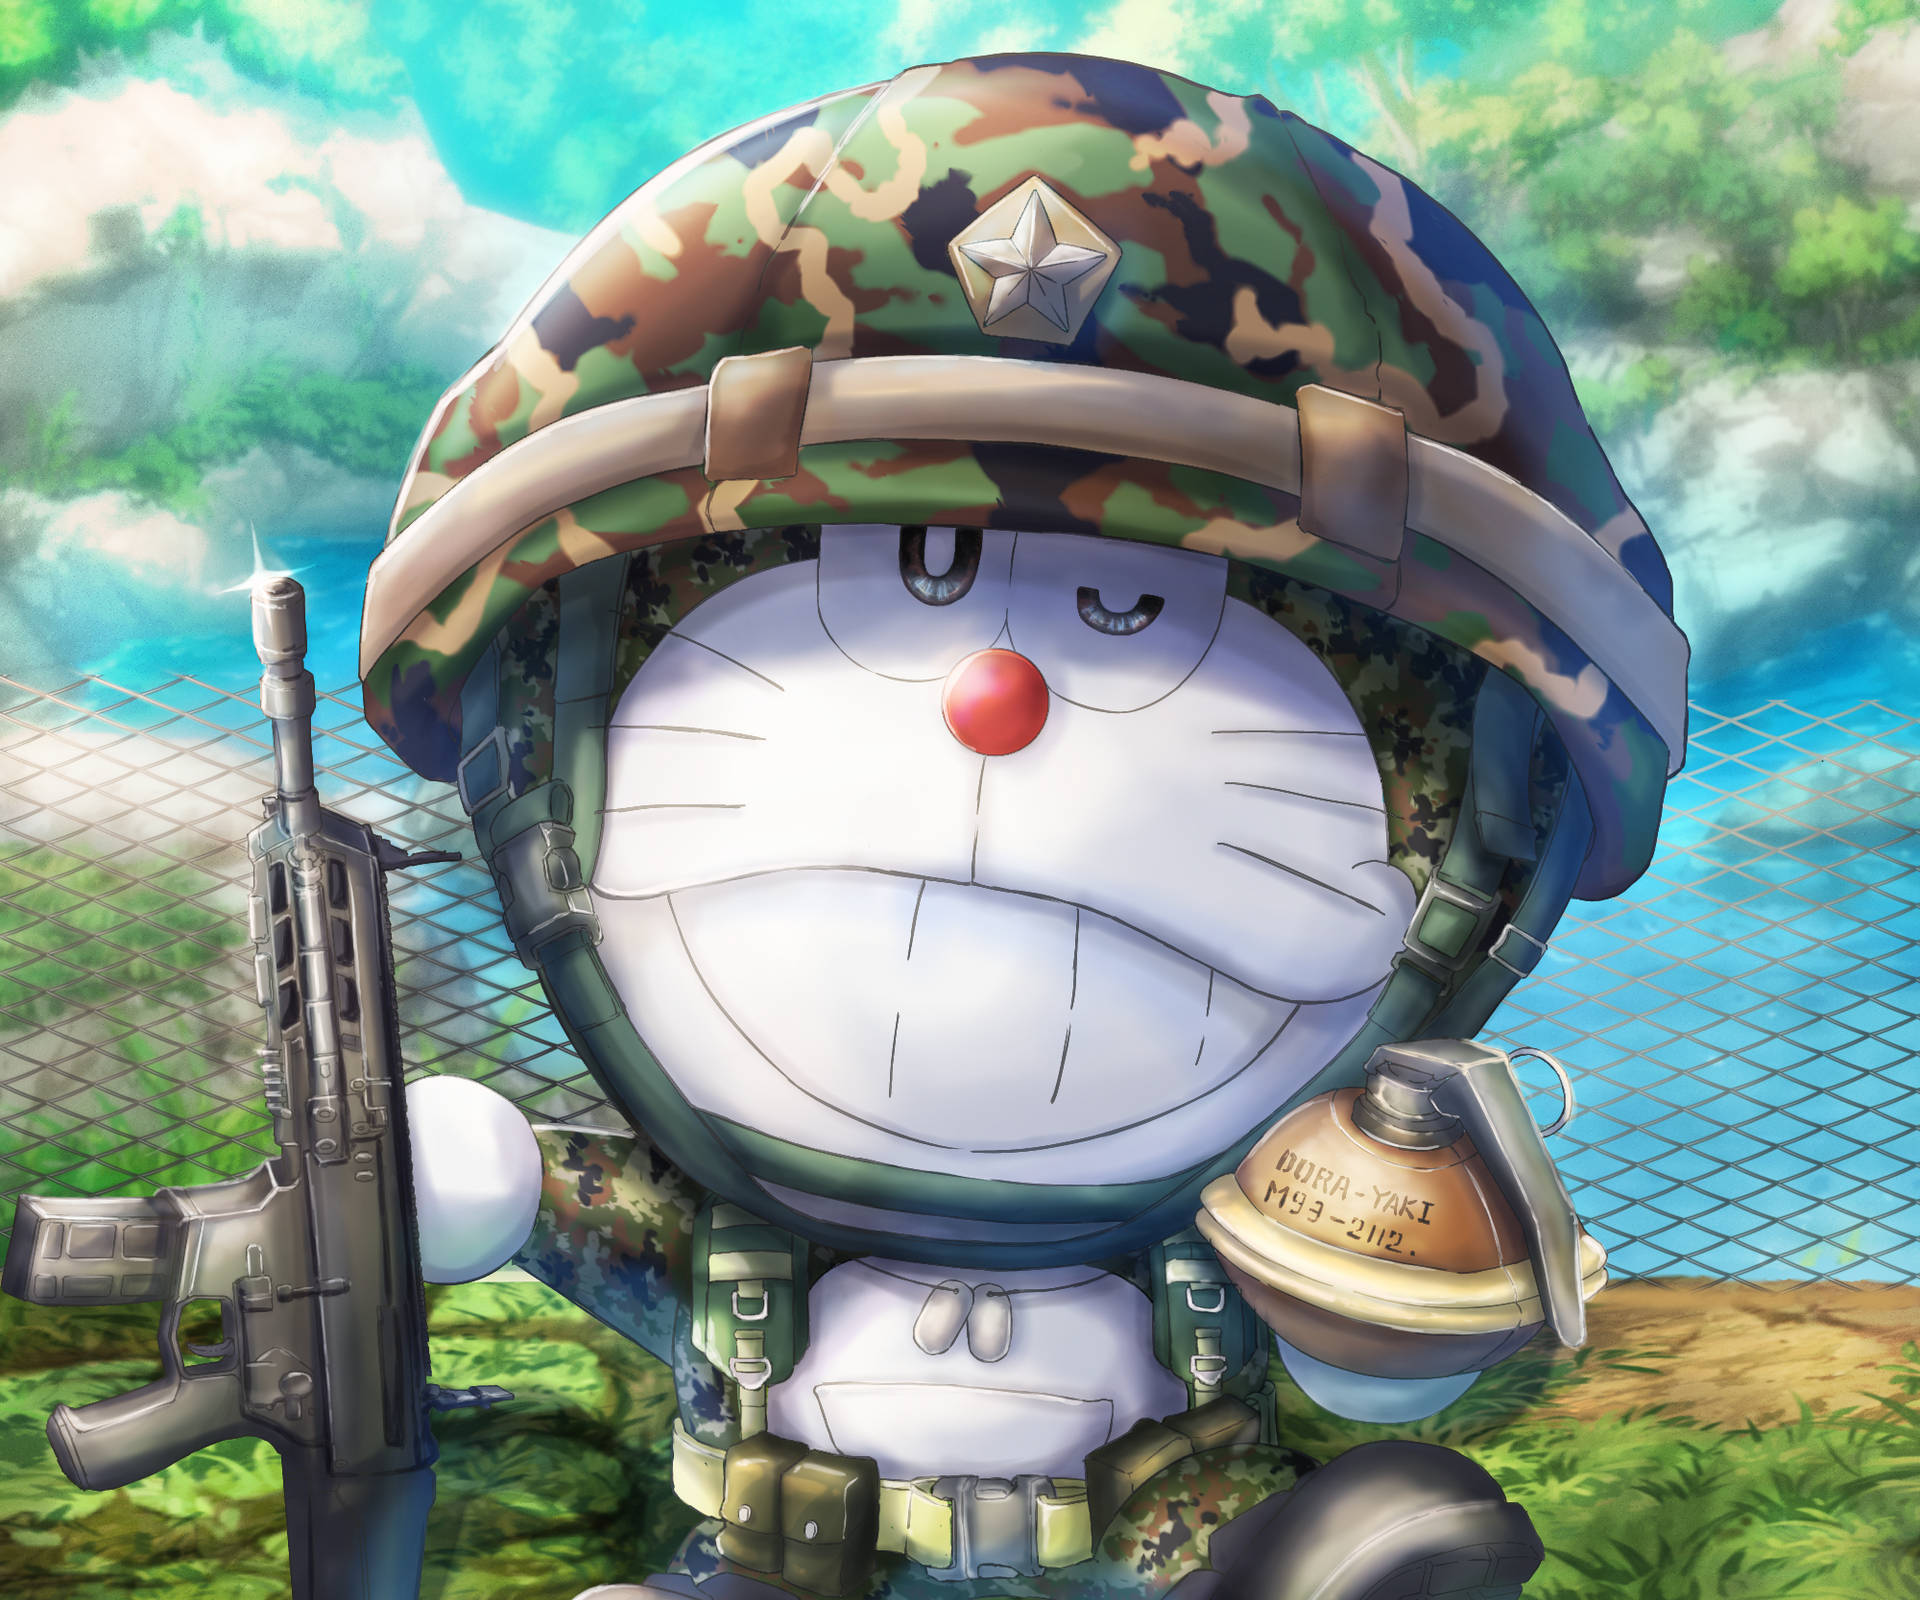 Cute Doraemon As A Soldier